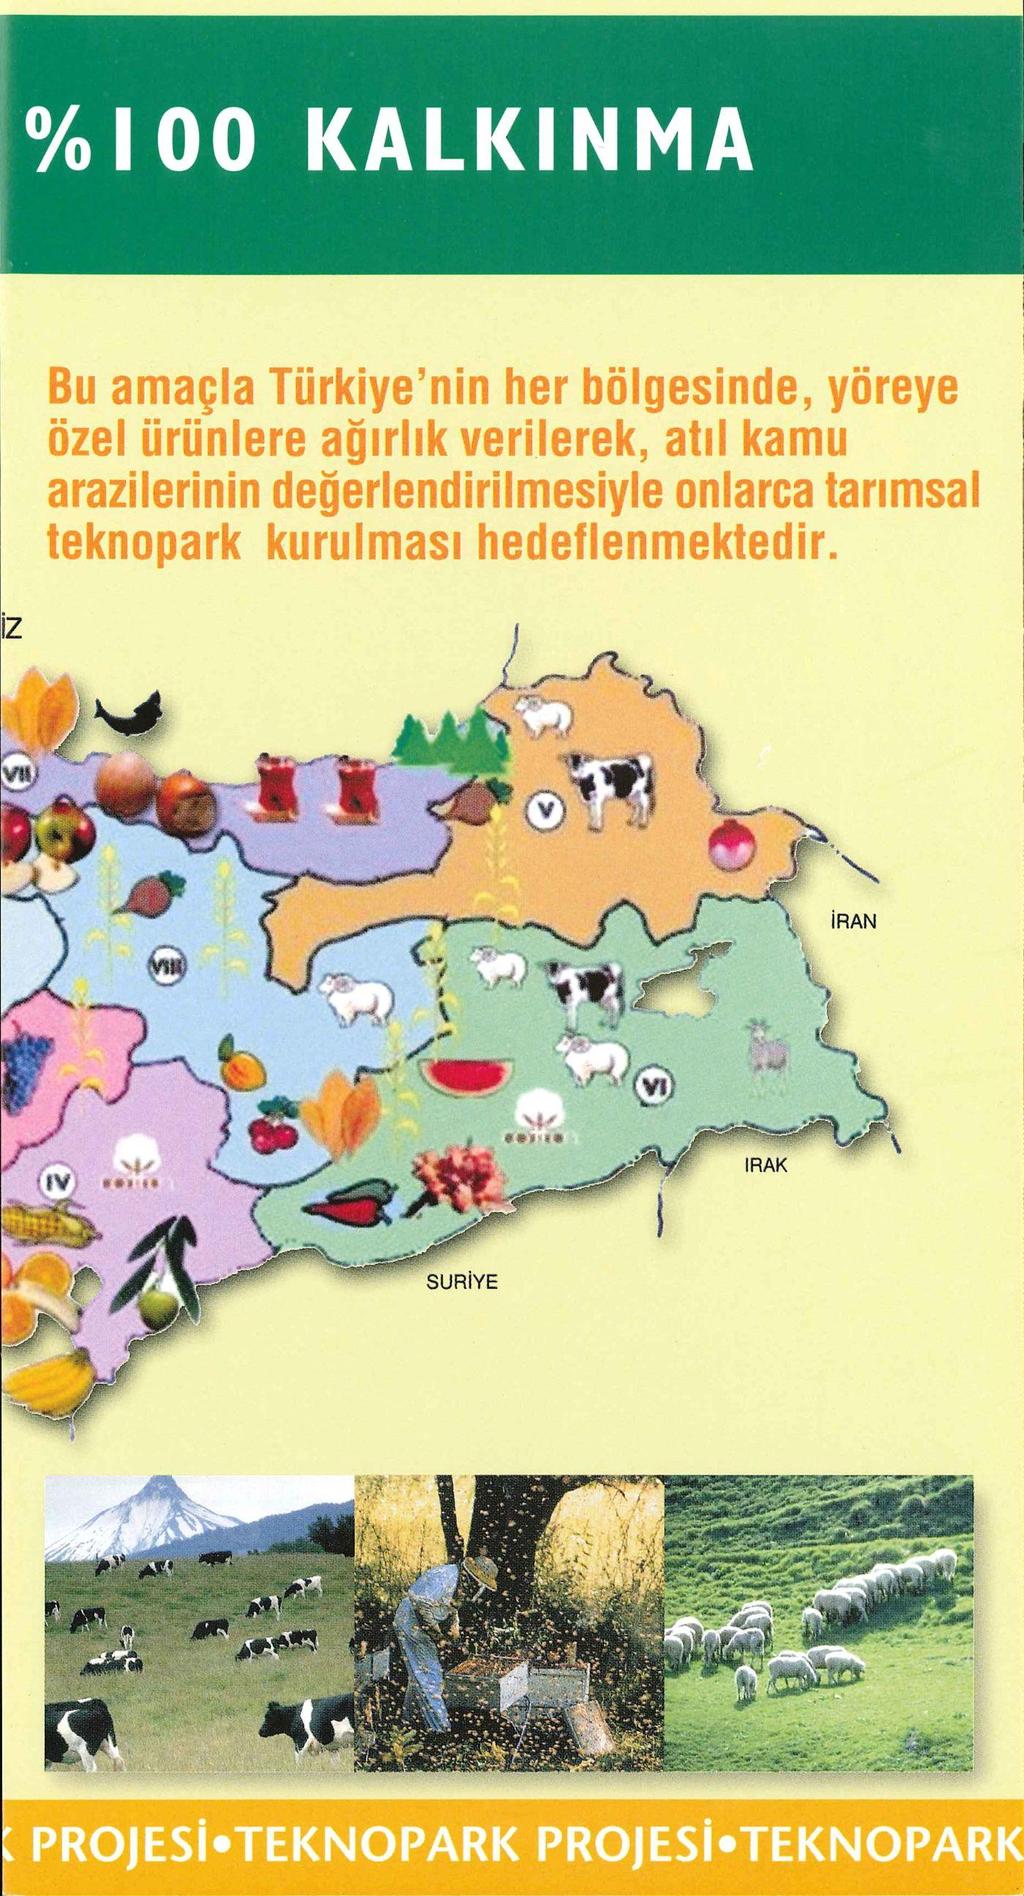 %I00 KALKINMA Bu amaçla Türkiye'nin tier bölgesinde, yöreye özel ürünlere ağırlık verilerek,